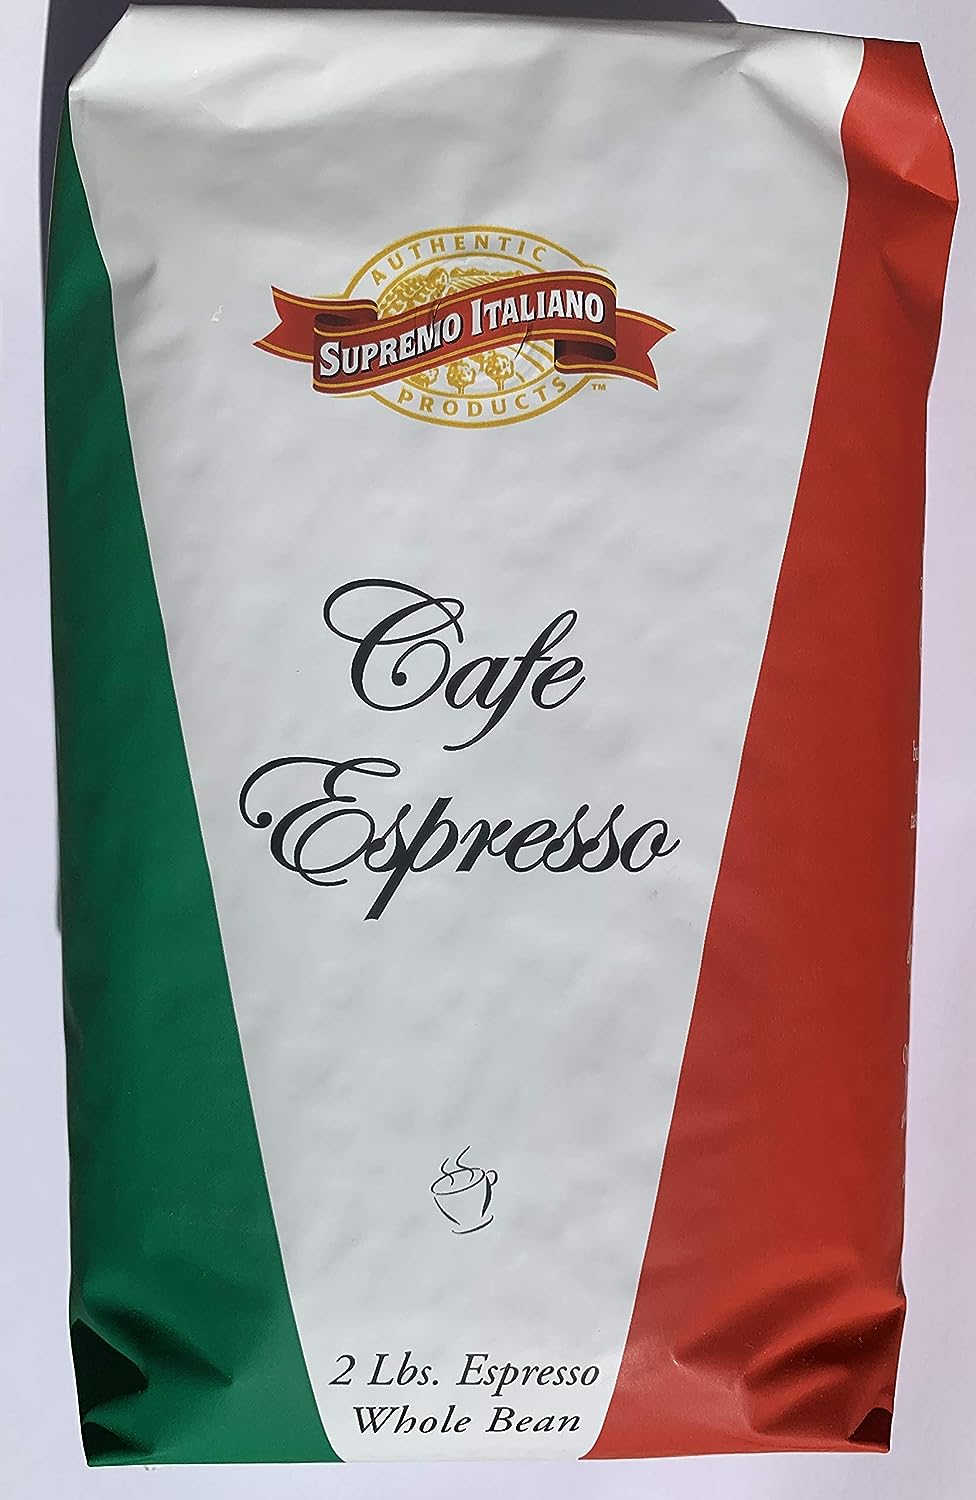 Supremo Italiano Cafe Expresso Whole Bean Coffee Cafe Gourmet Coffee Classic Italian Espresso